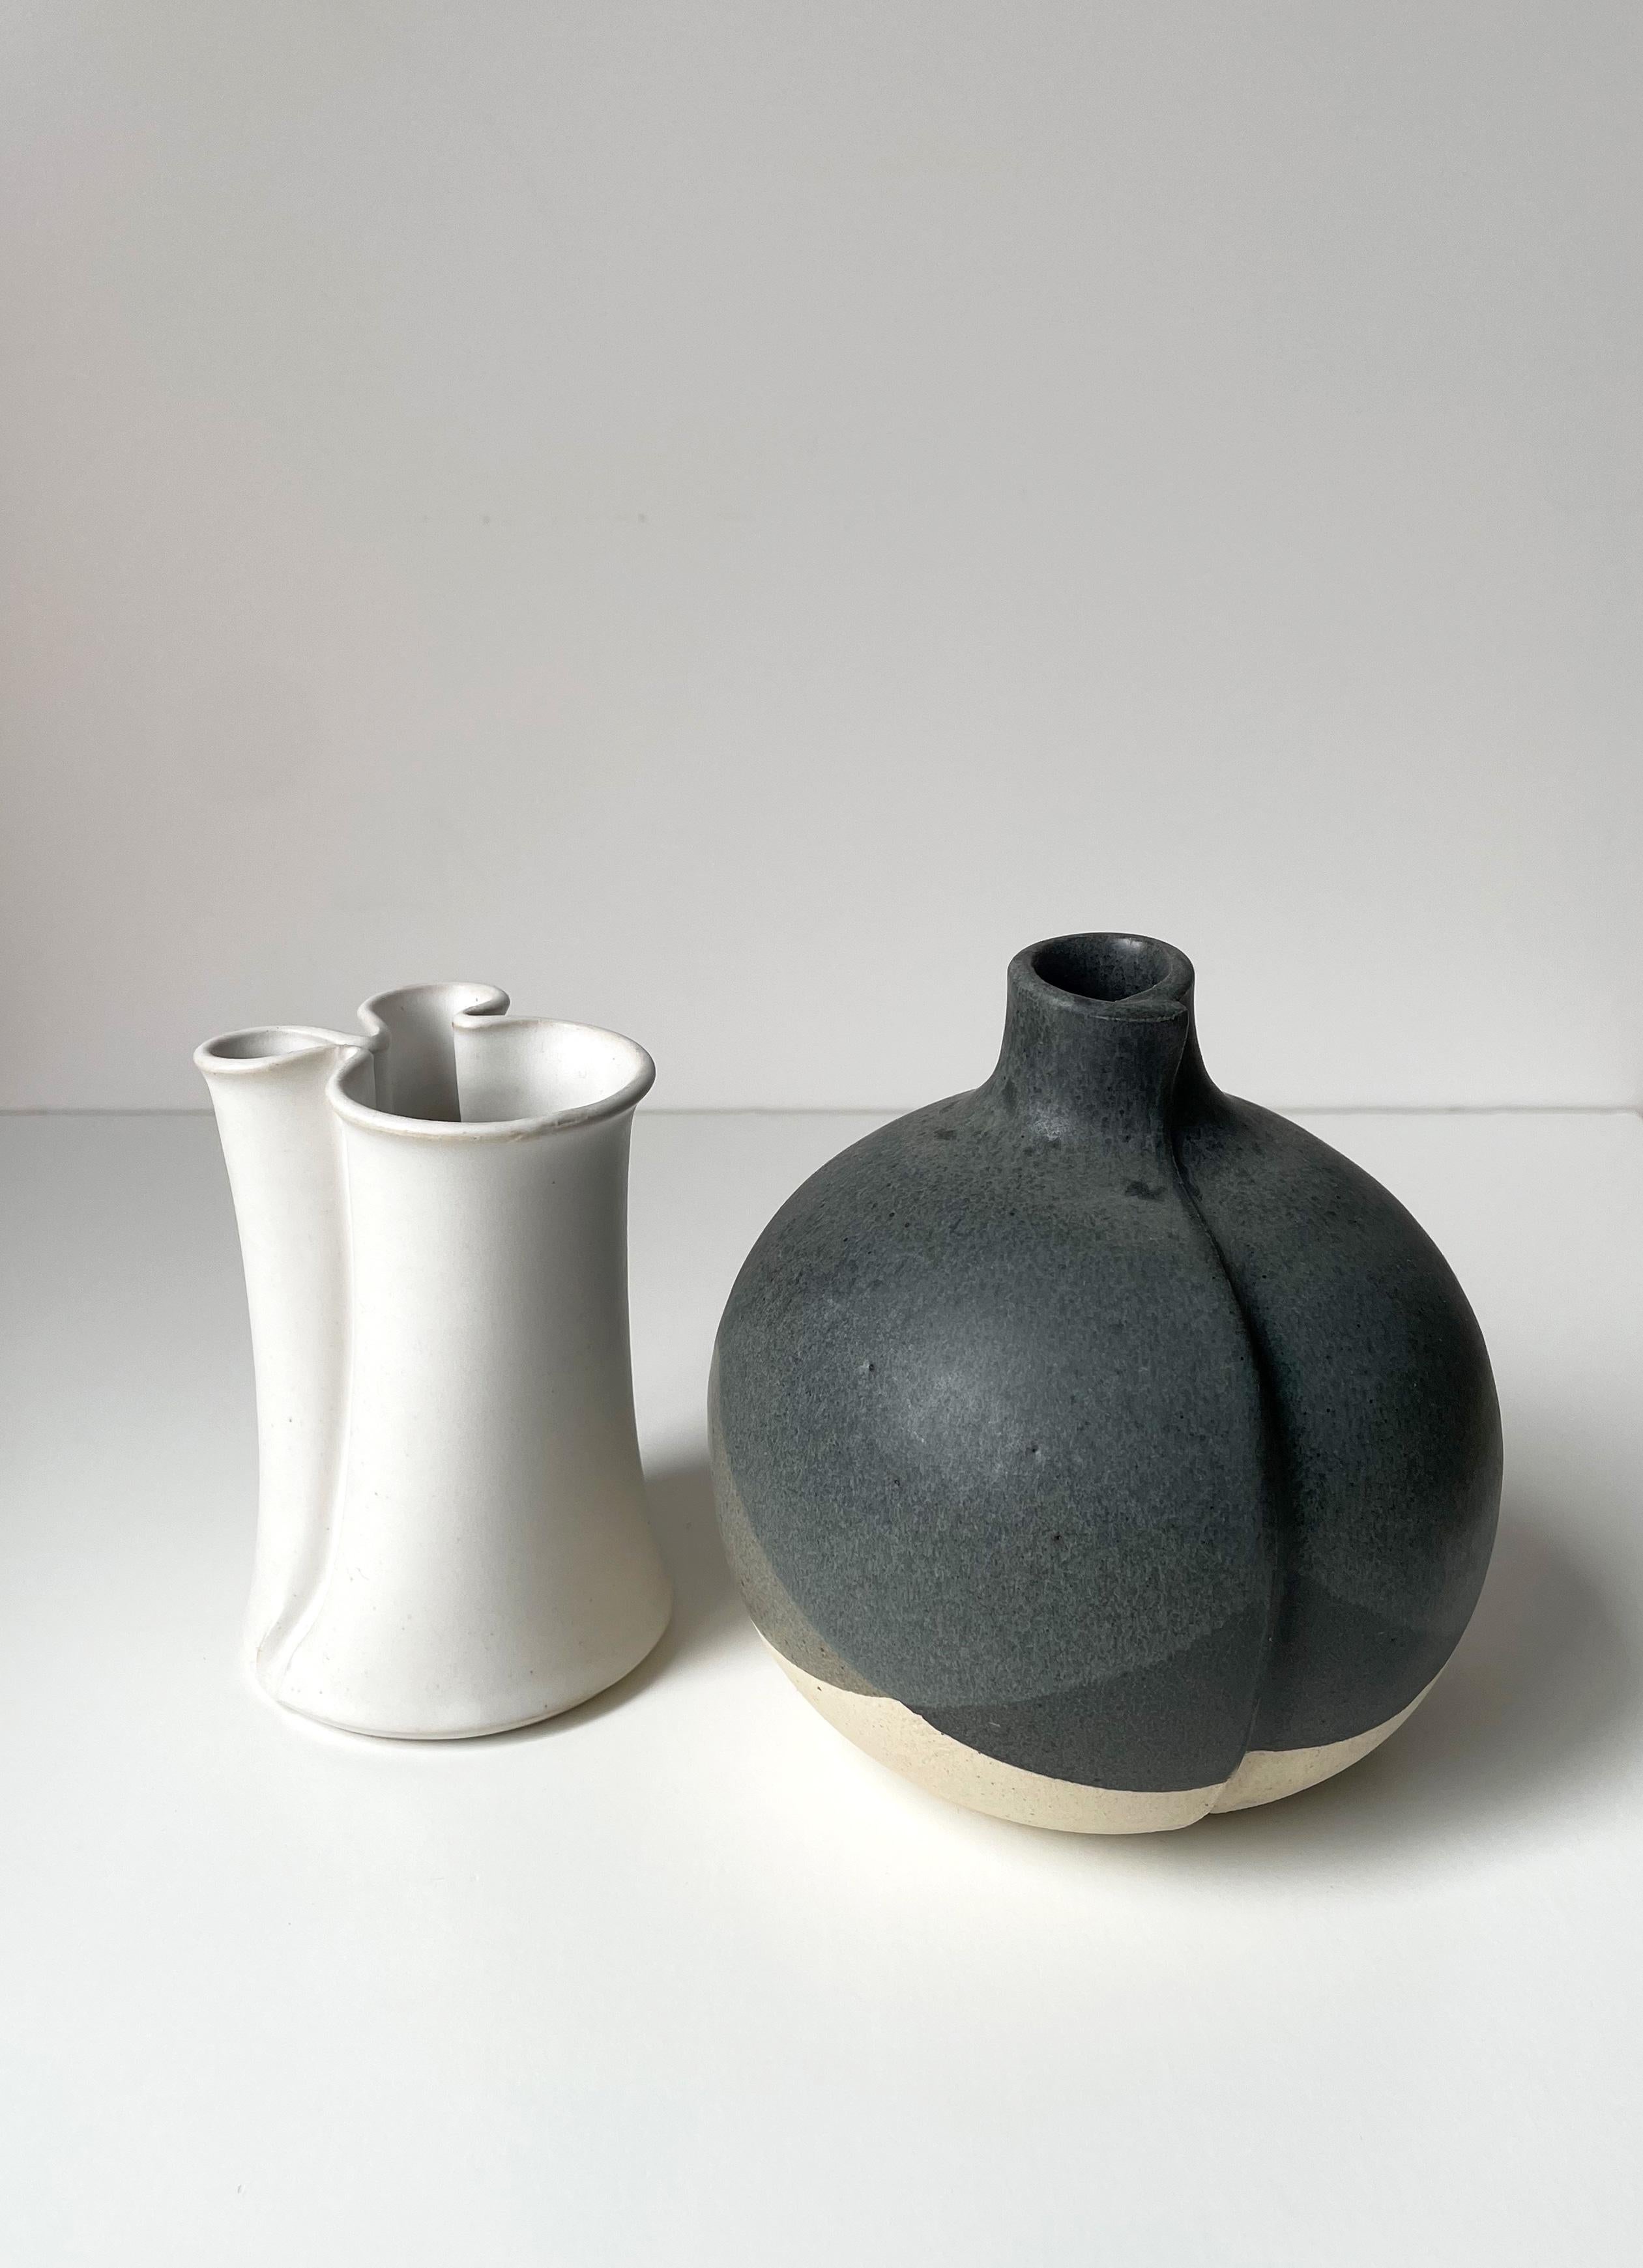 Ensemble de deux vases modernistes danois aux formes douces et organiques et aux couleurs sourdes, conçus par le célèbre artiste céramiste Aage Würtz dans les années 1980. Le duo père-fils KH Würtz est l'une des entreprises de céramique les plus